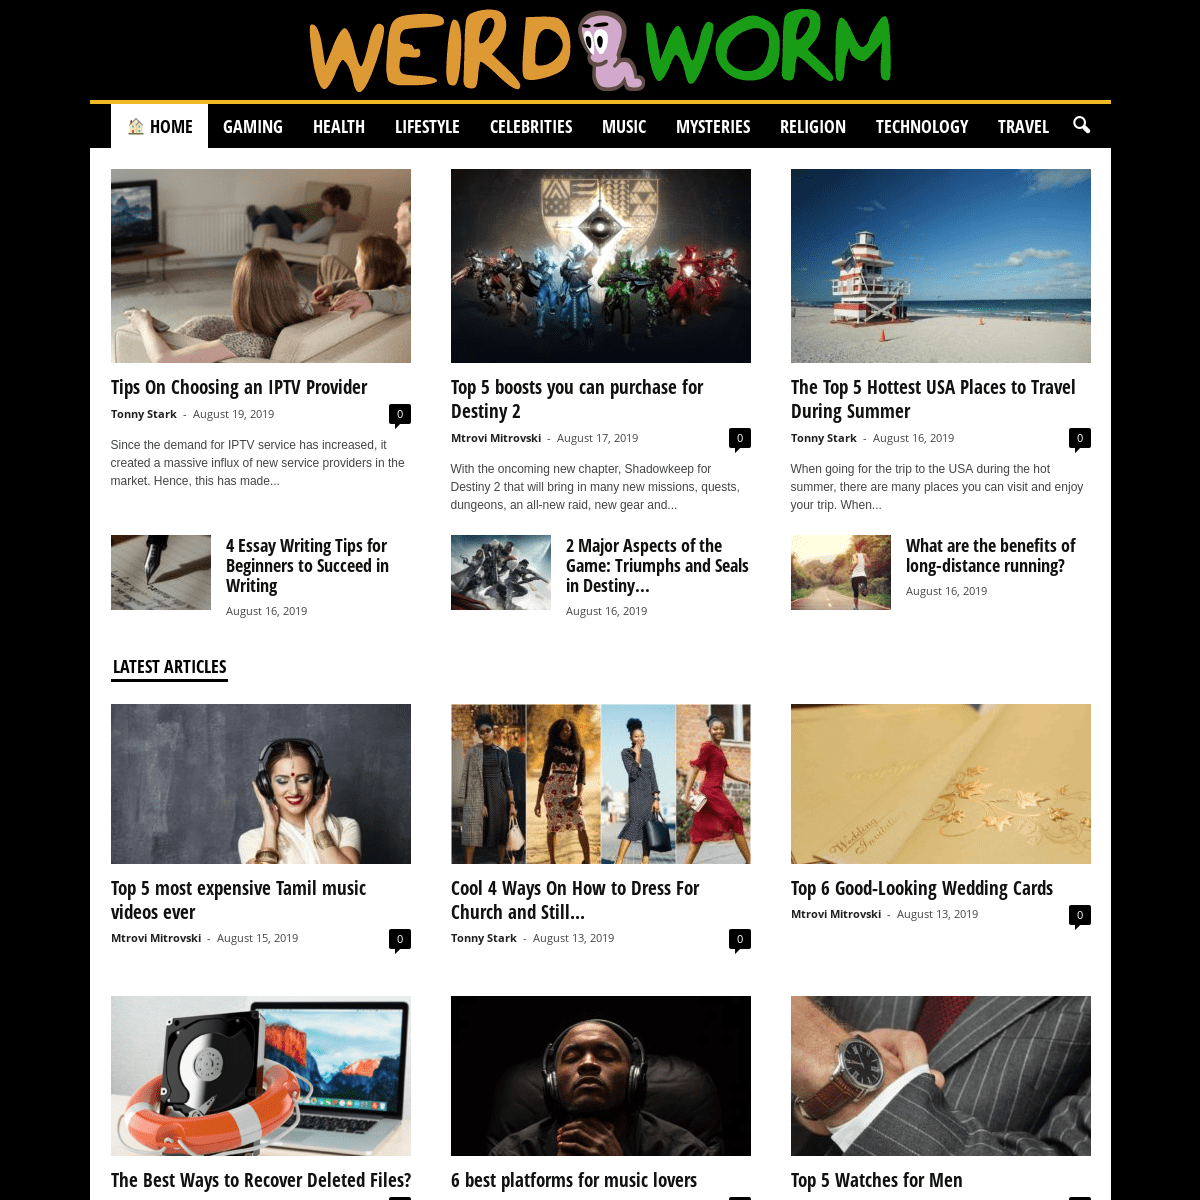 Weird Worm - Weird and Bizarre